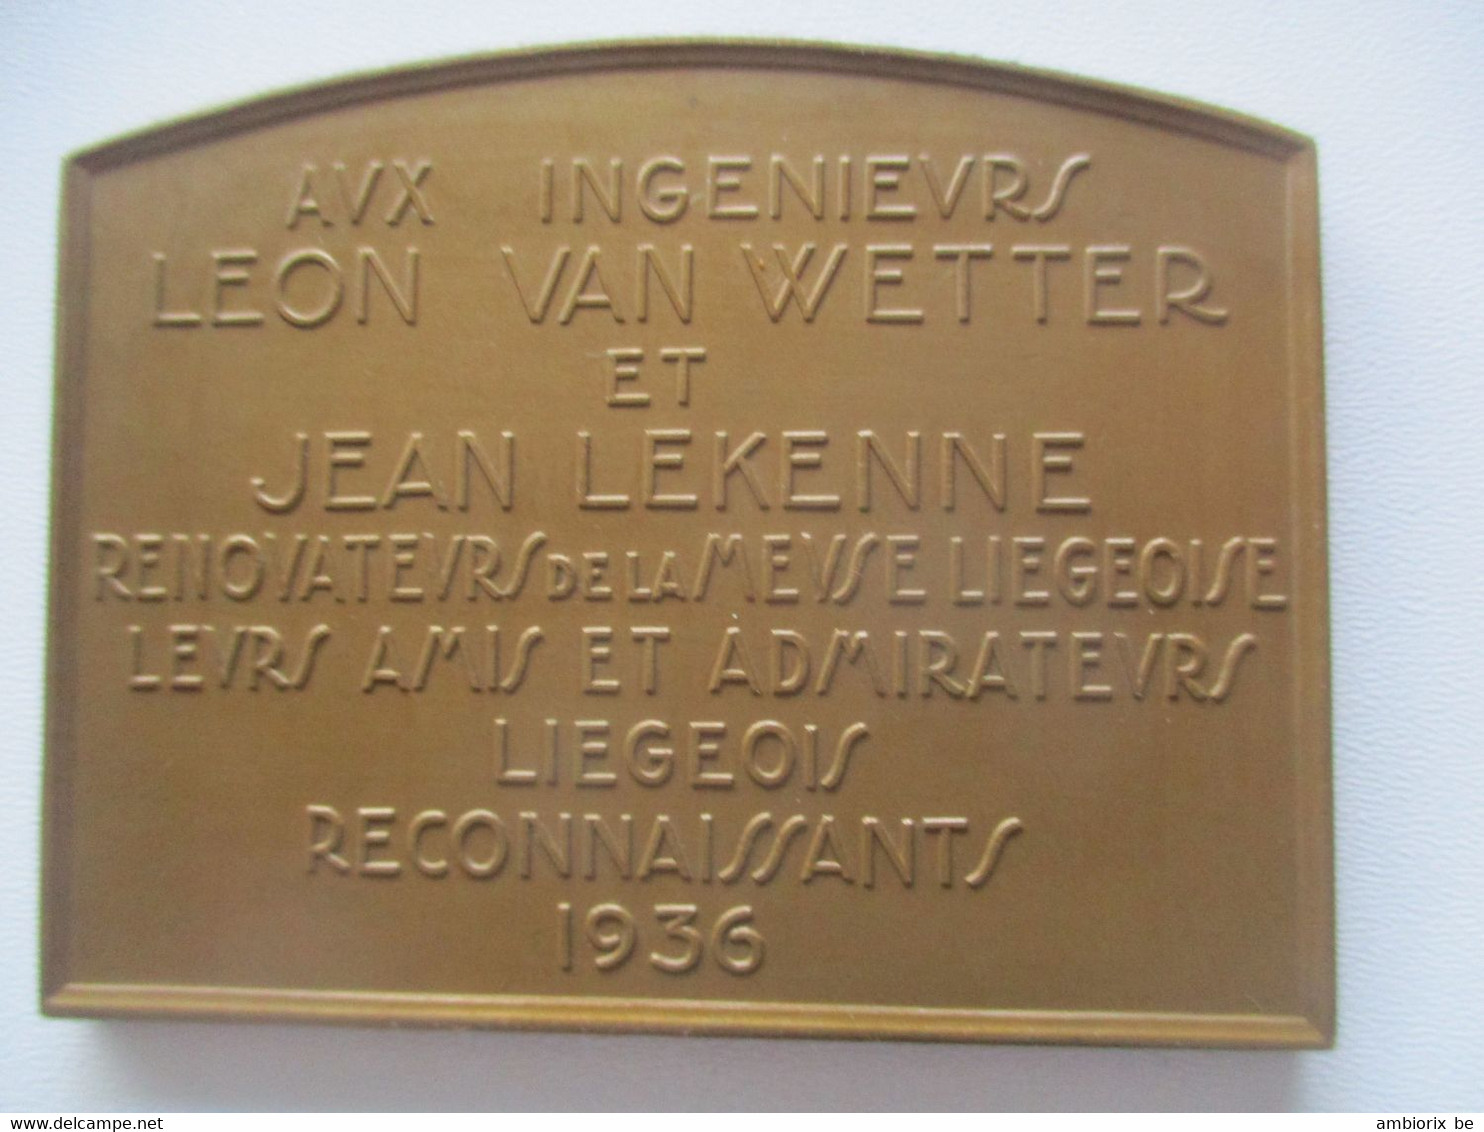 Le Barrage De Monsin à Liège - Aux Ingénieurs Léon Van Wetter Et Jean Lekenne - Touristiques